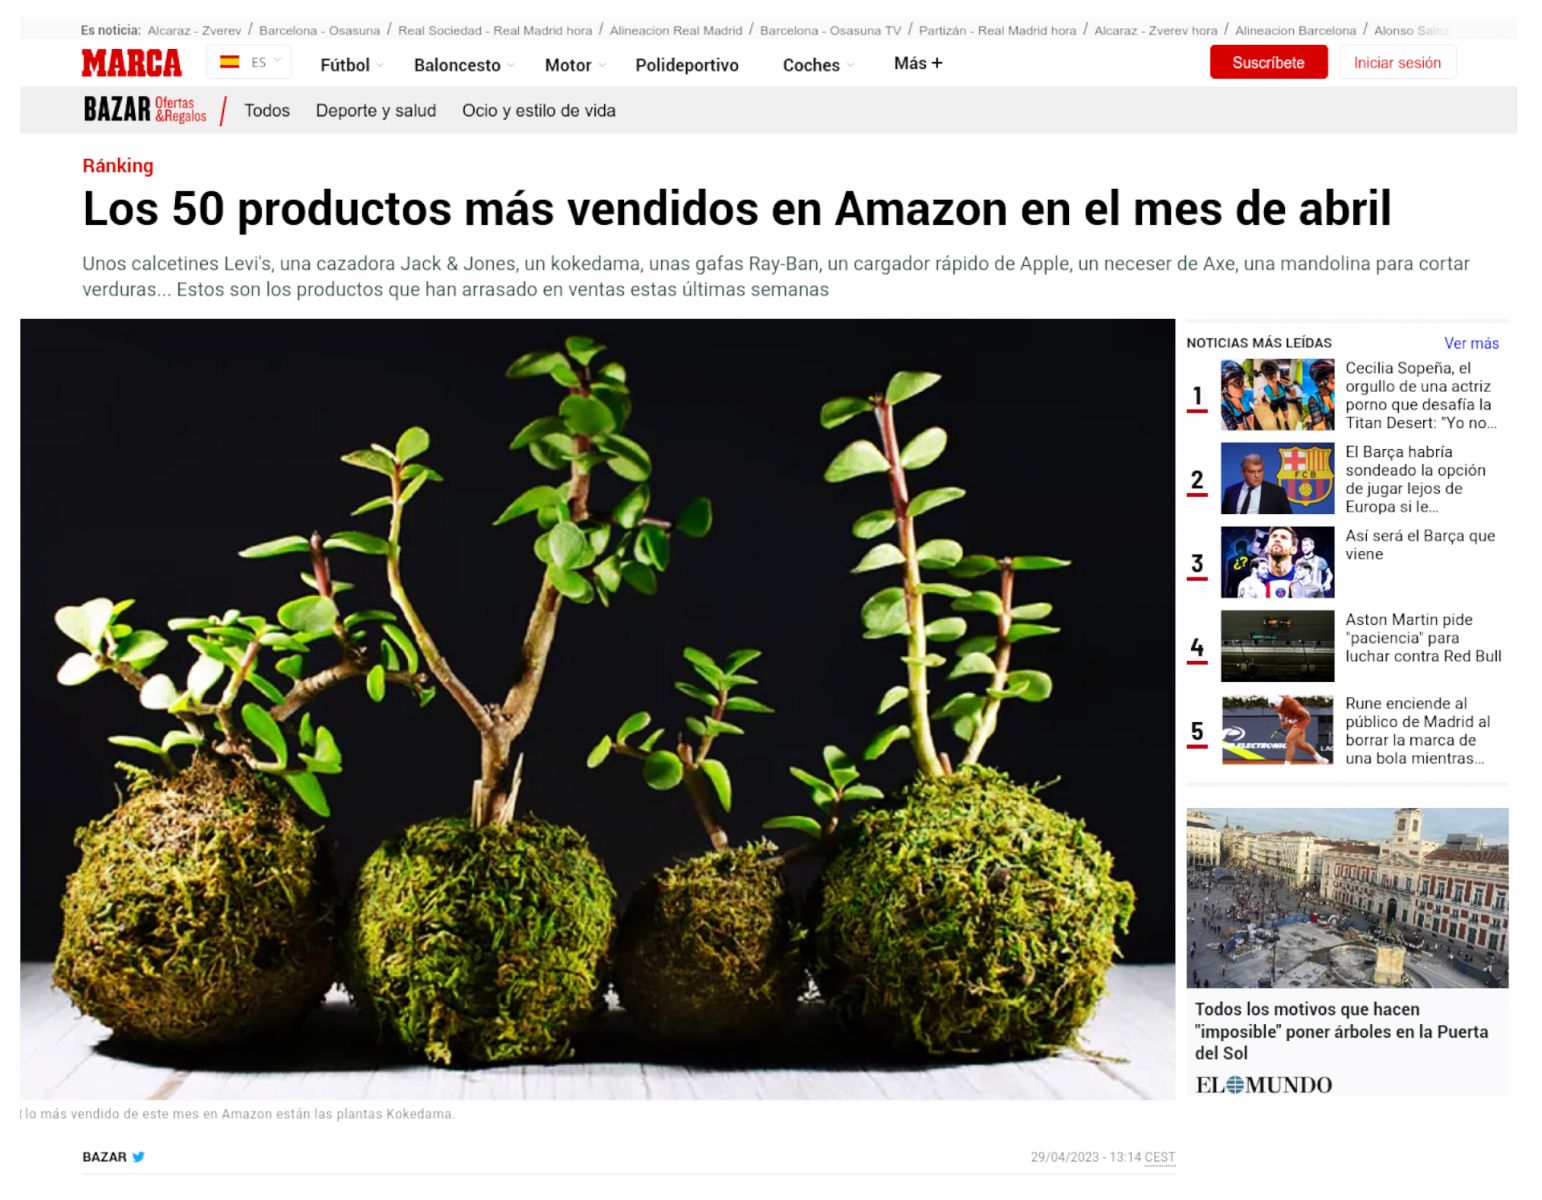 Los Kokedama de Viveros Murcia entre los 50 más vendidos de abril en Amazon según el diario MARCA